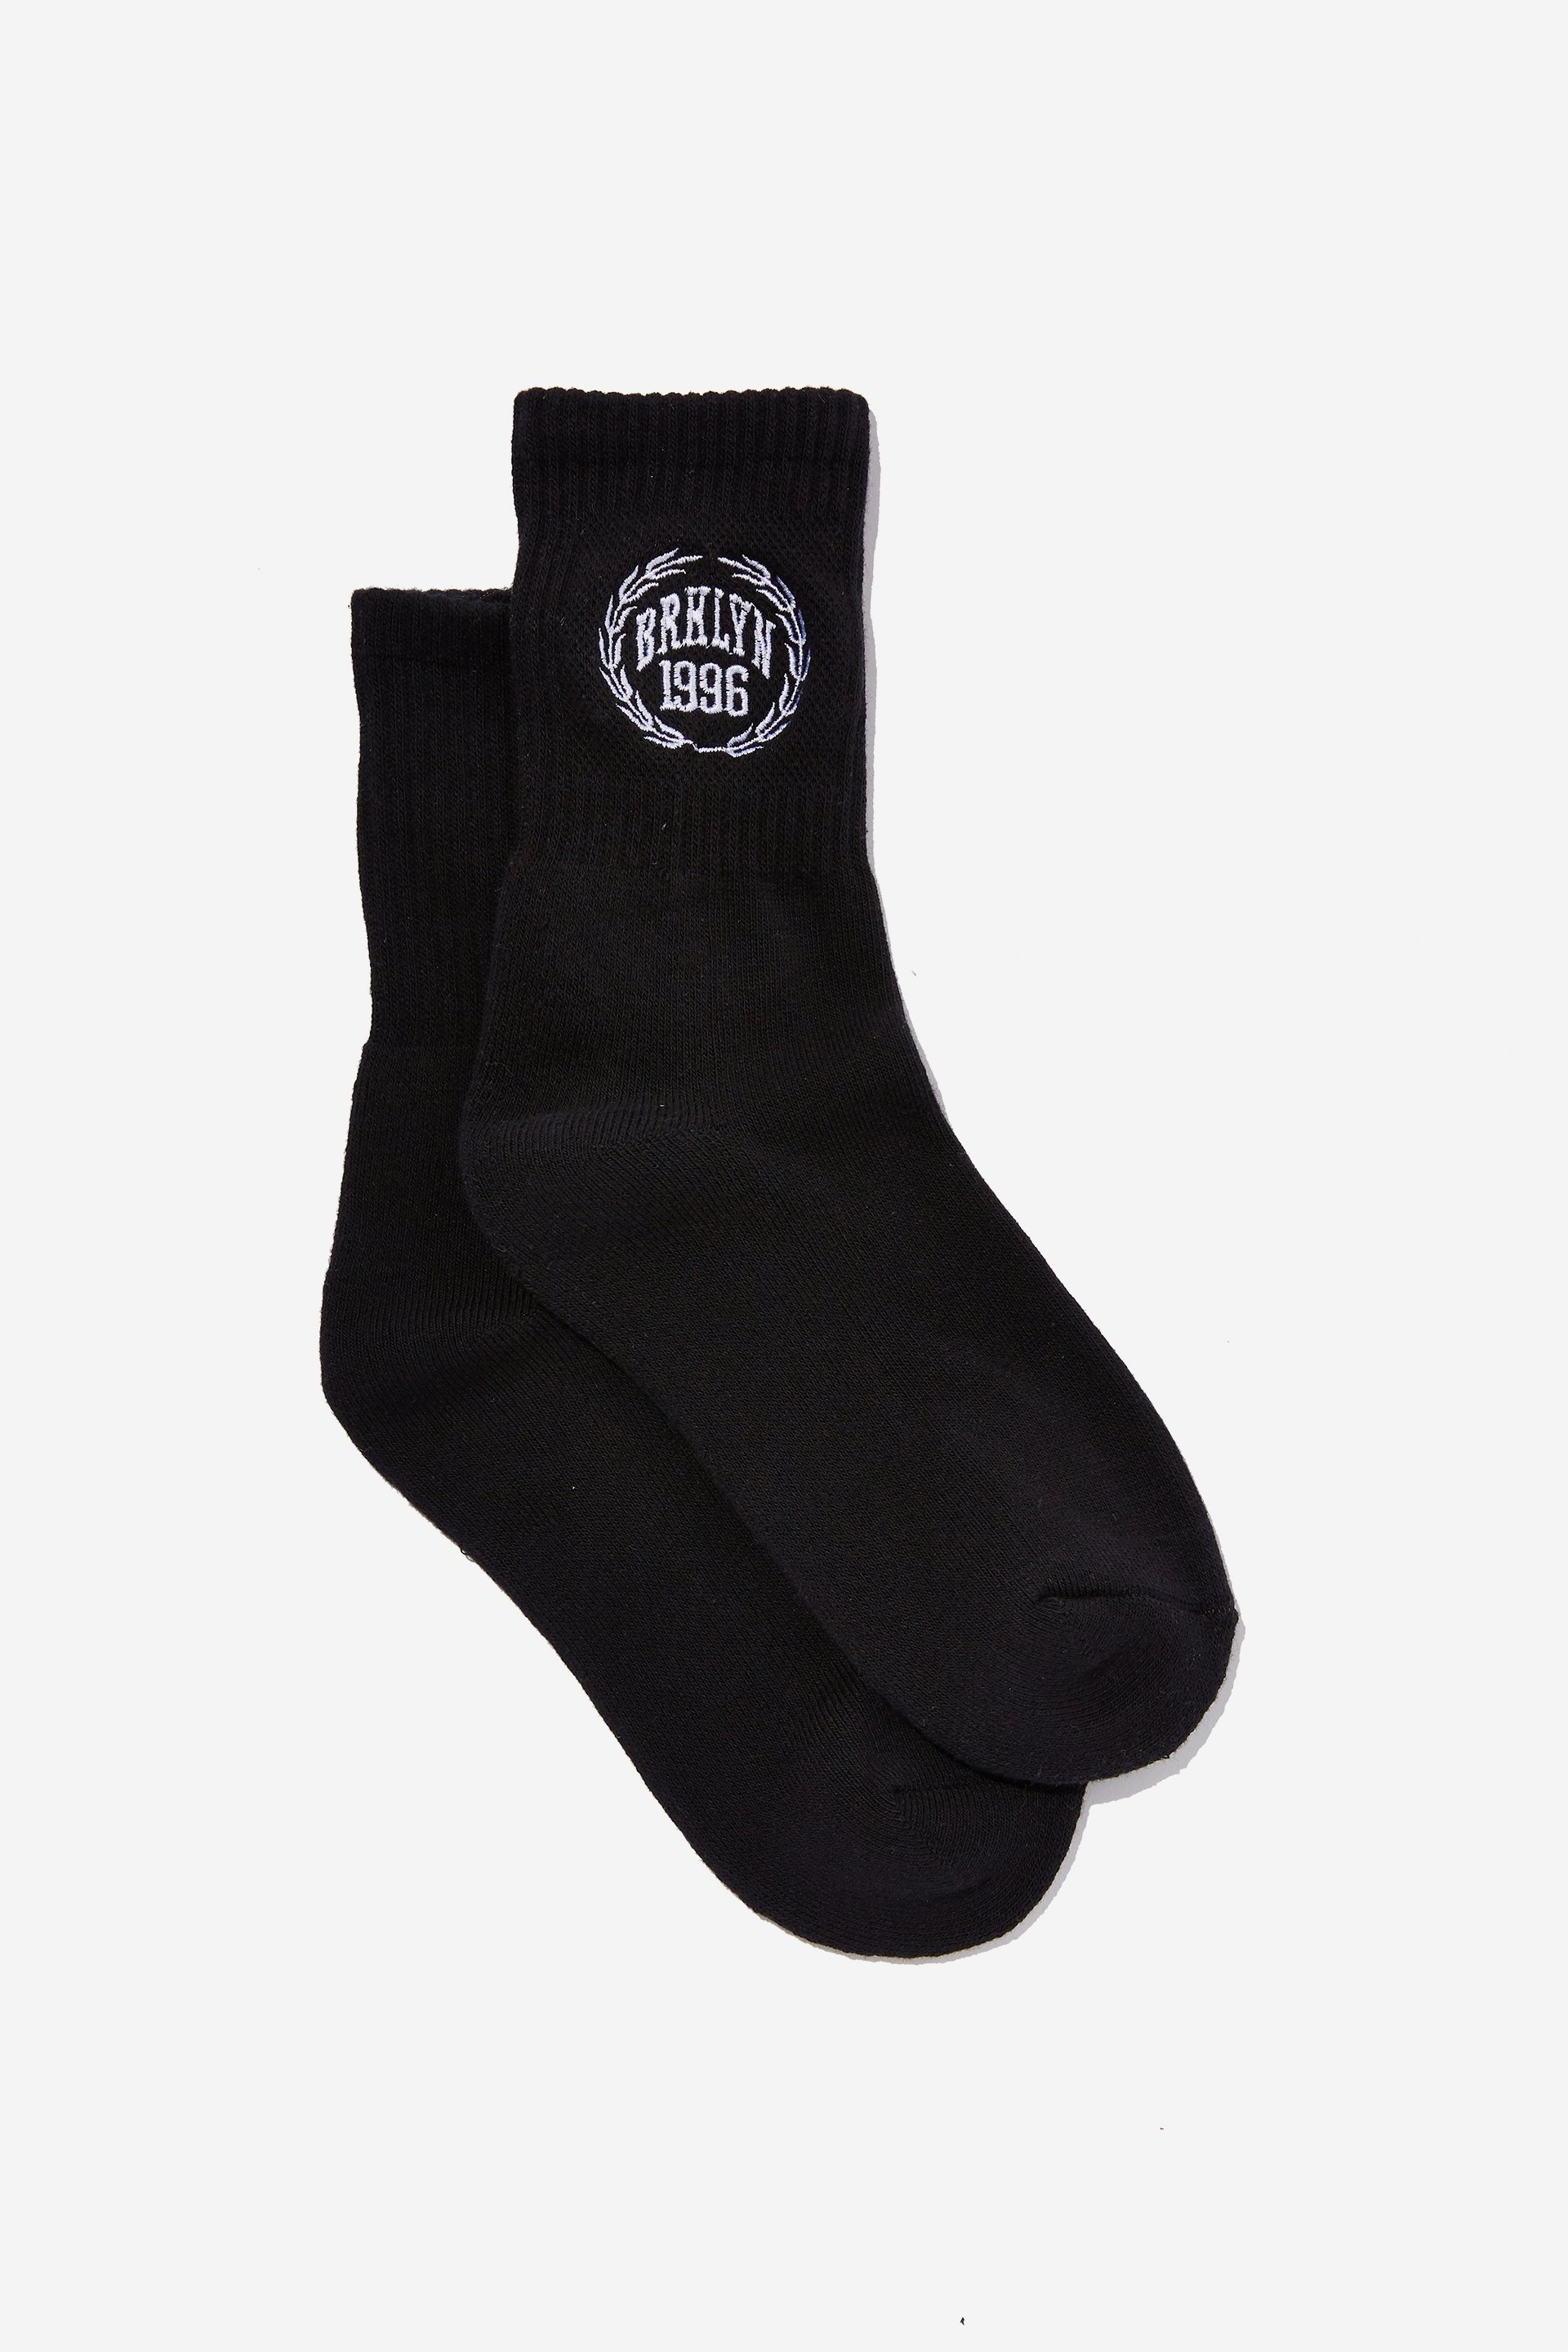 Factorie - Retro Sport Sock - Black brklyn